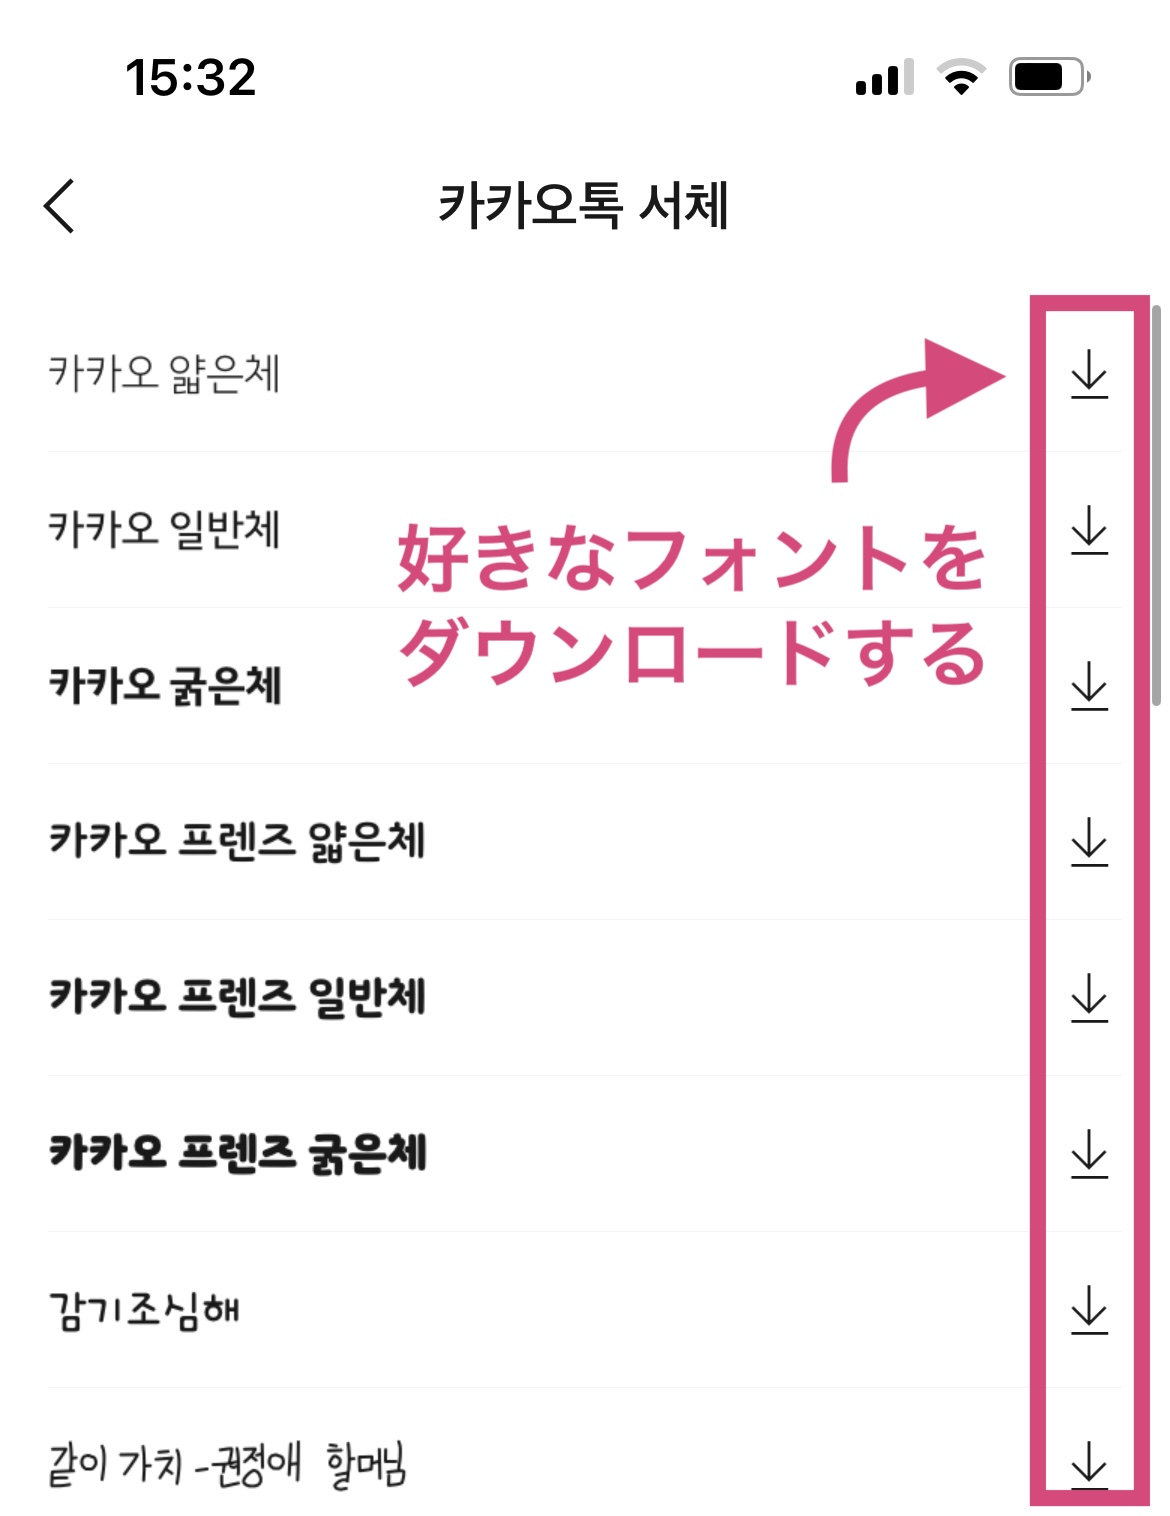 カカオトークの韓国語フォントを変更する方法